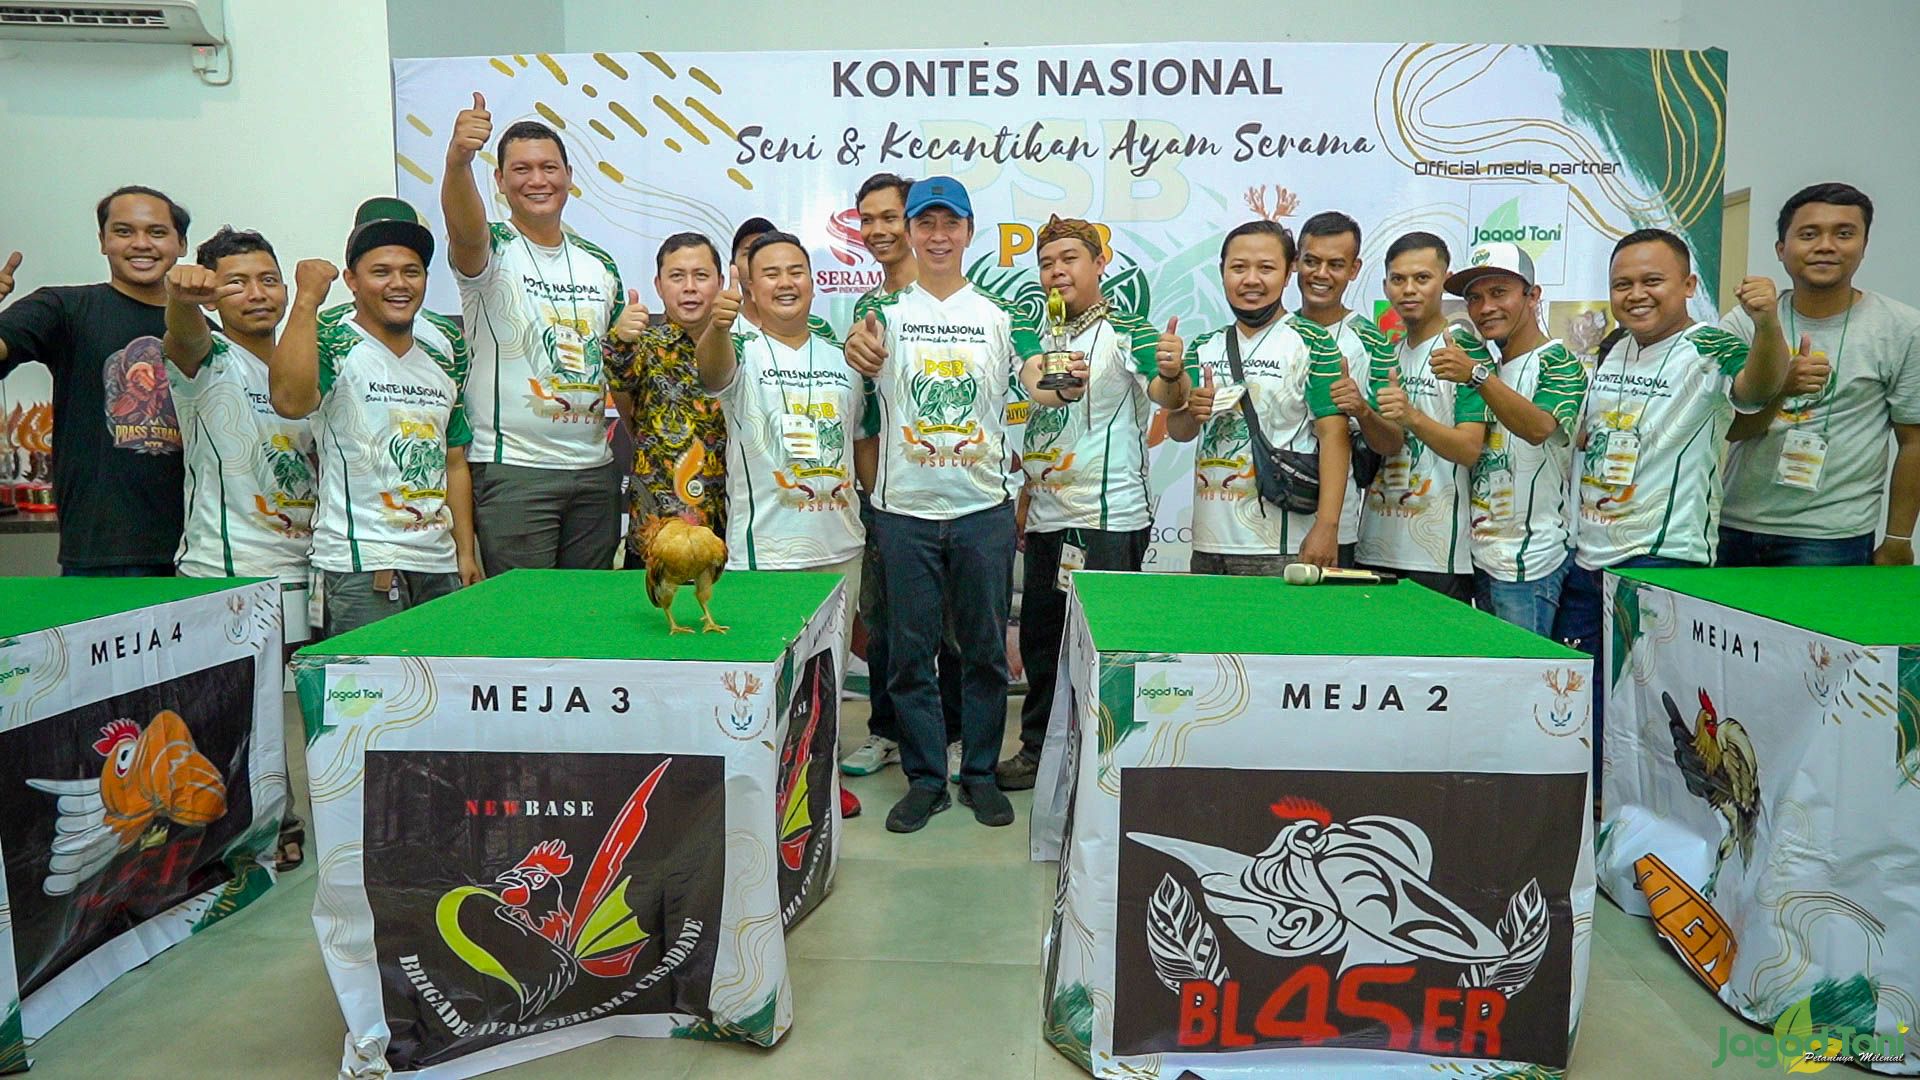 Kontes Ayam Serama Sukses Digelar di Kota Bogor